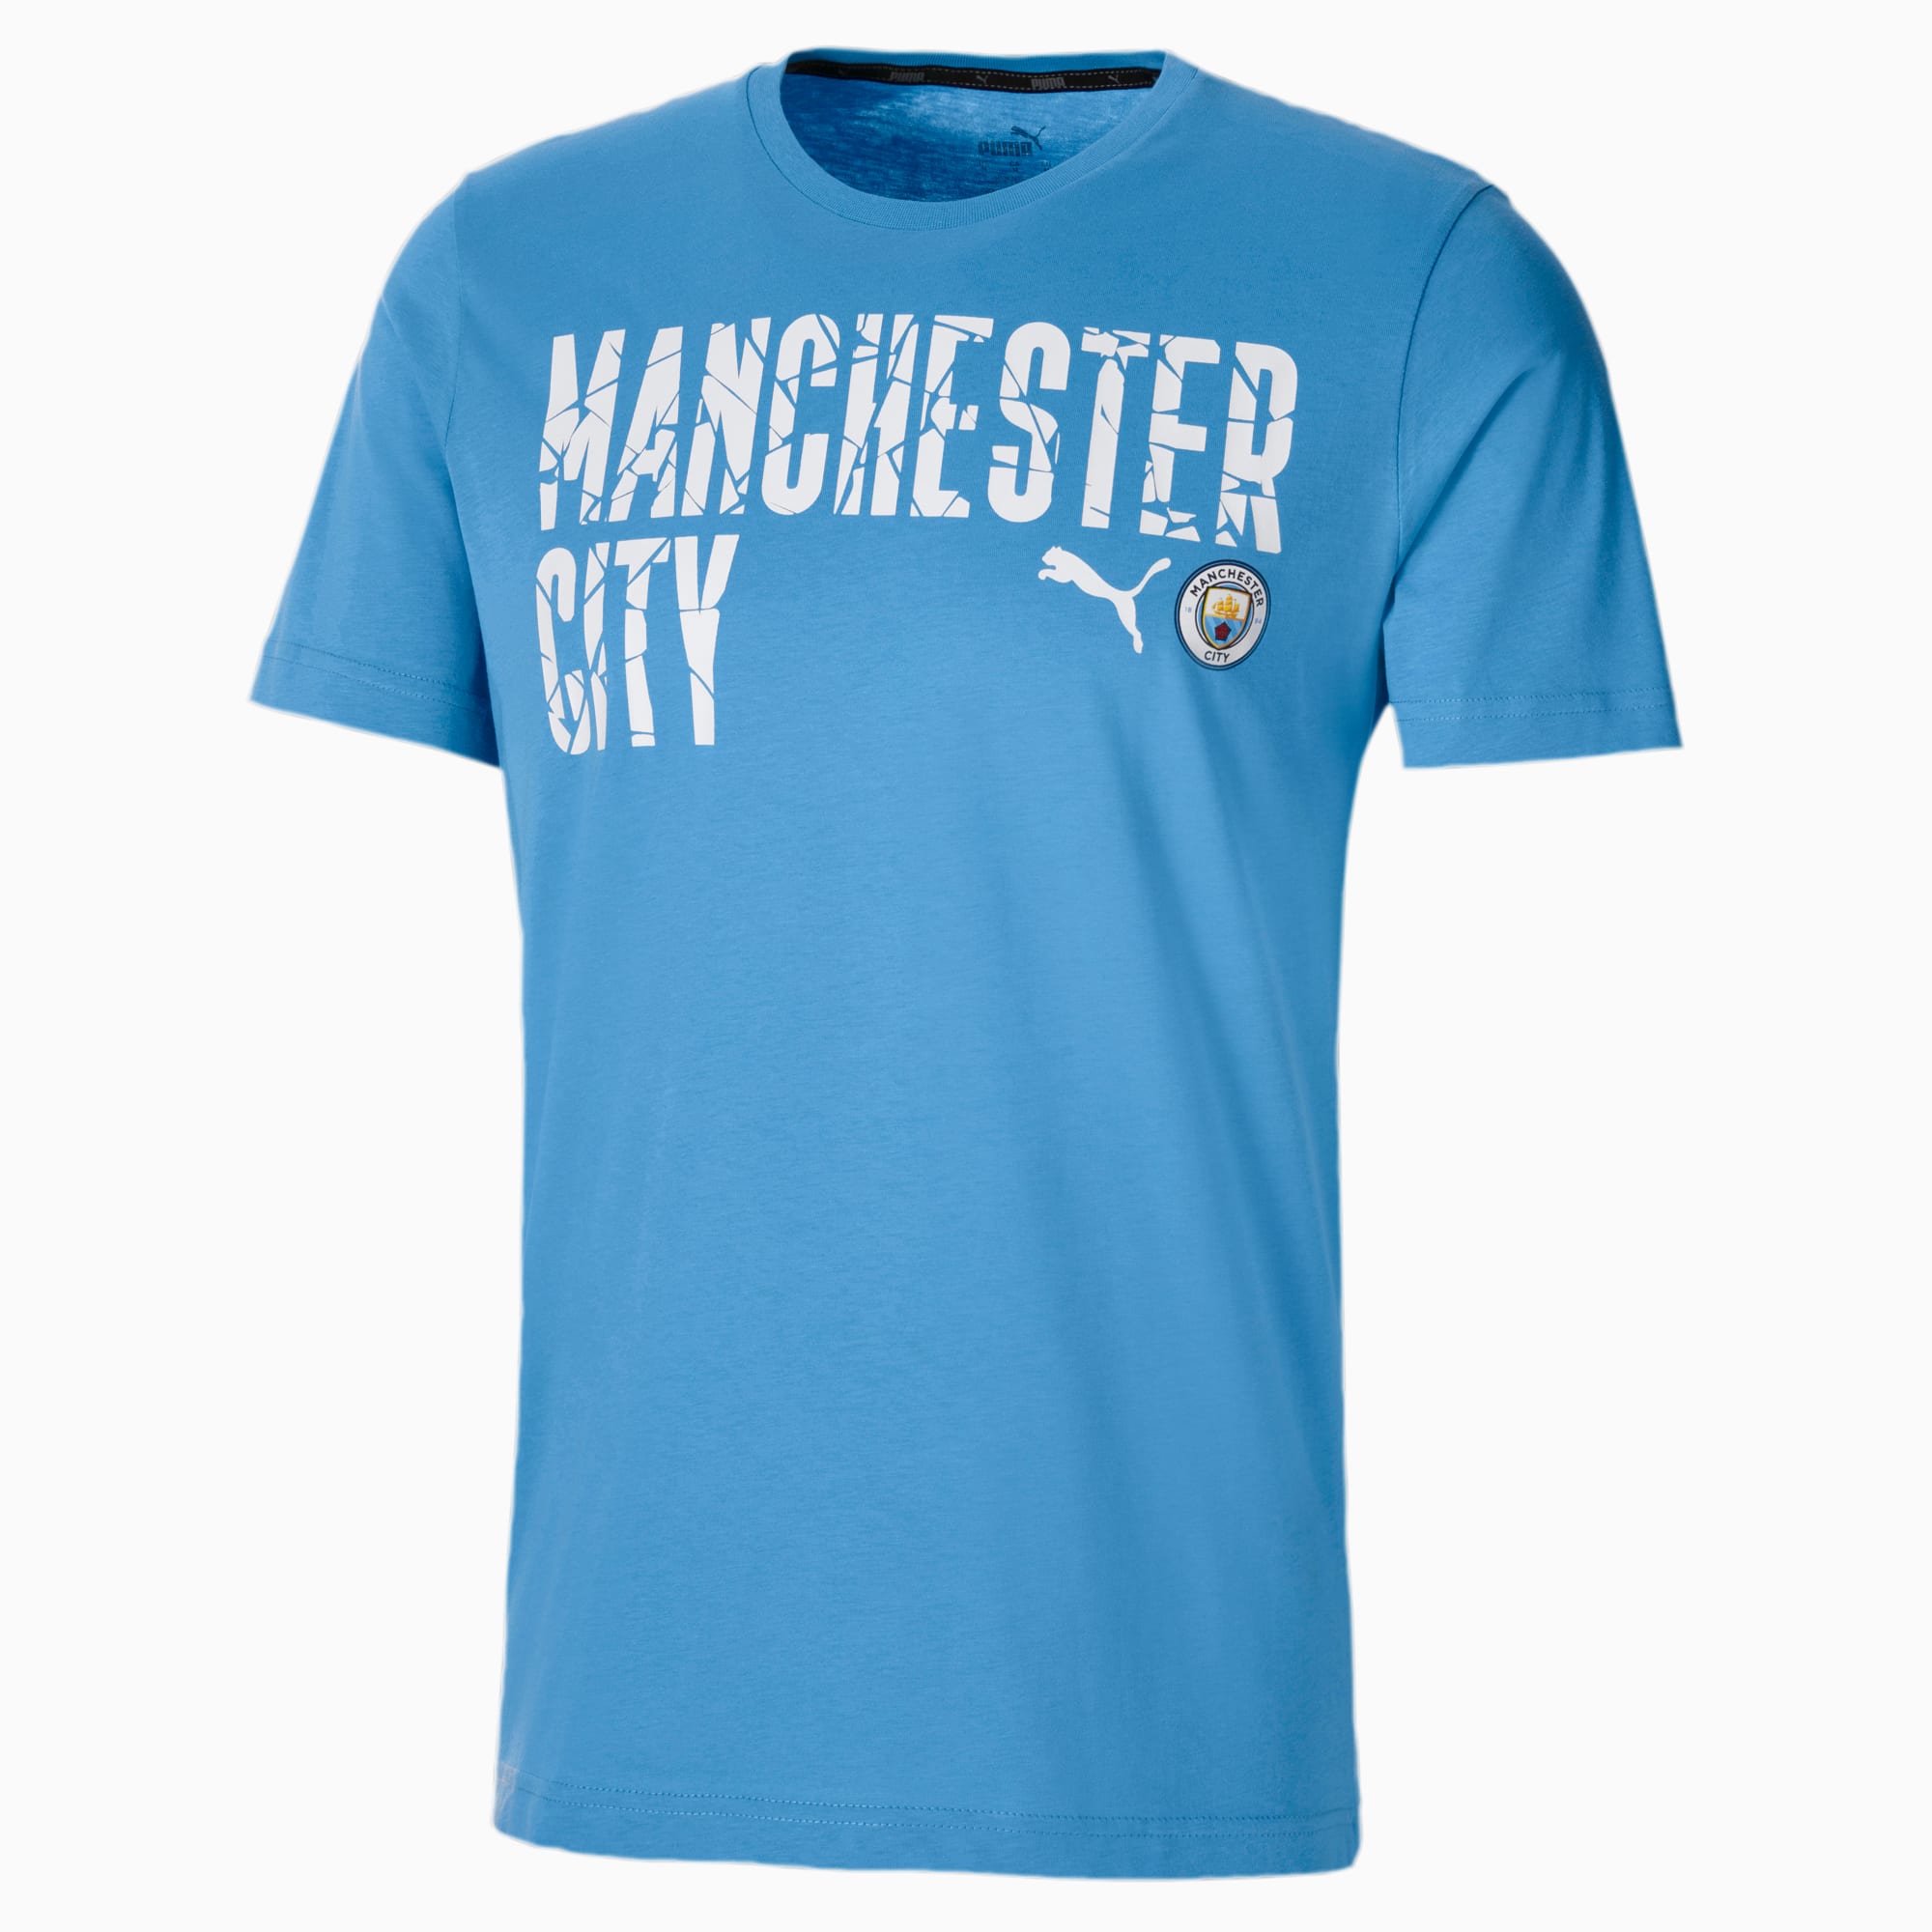 PUMA T-Shirt Man City ftblCORE Wording Football pour Homme, Bleu/Blanc, Taille S, Vêtements